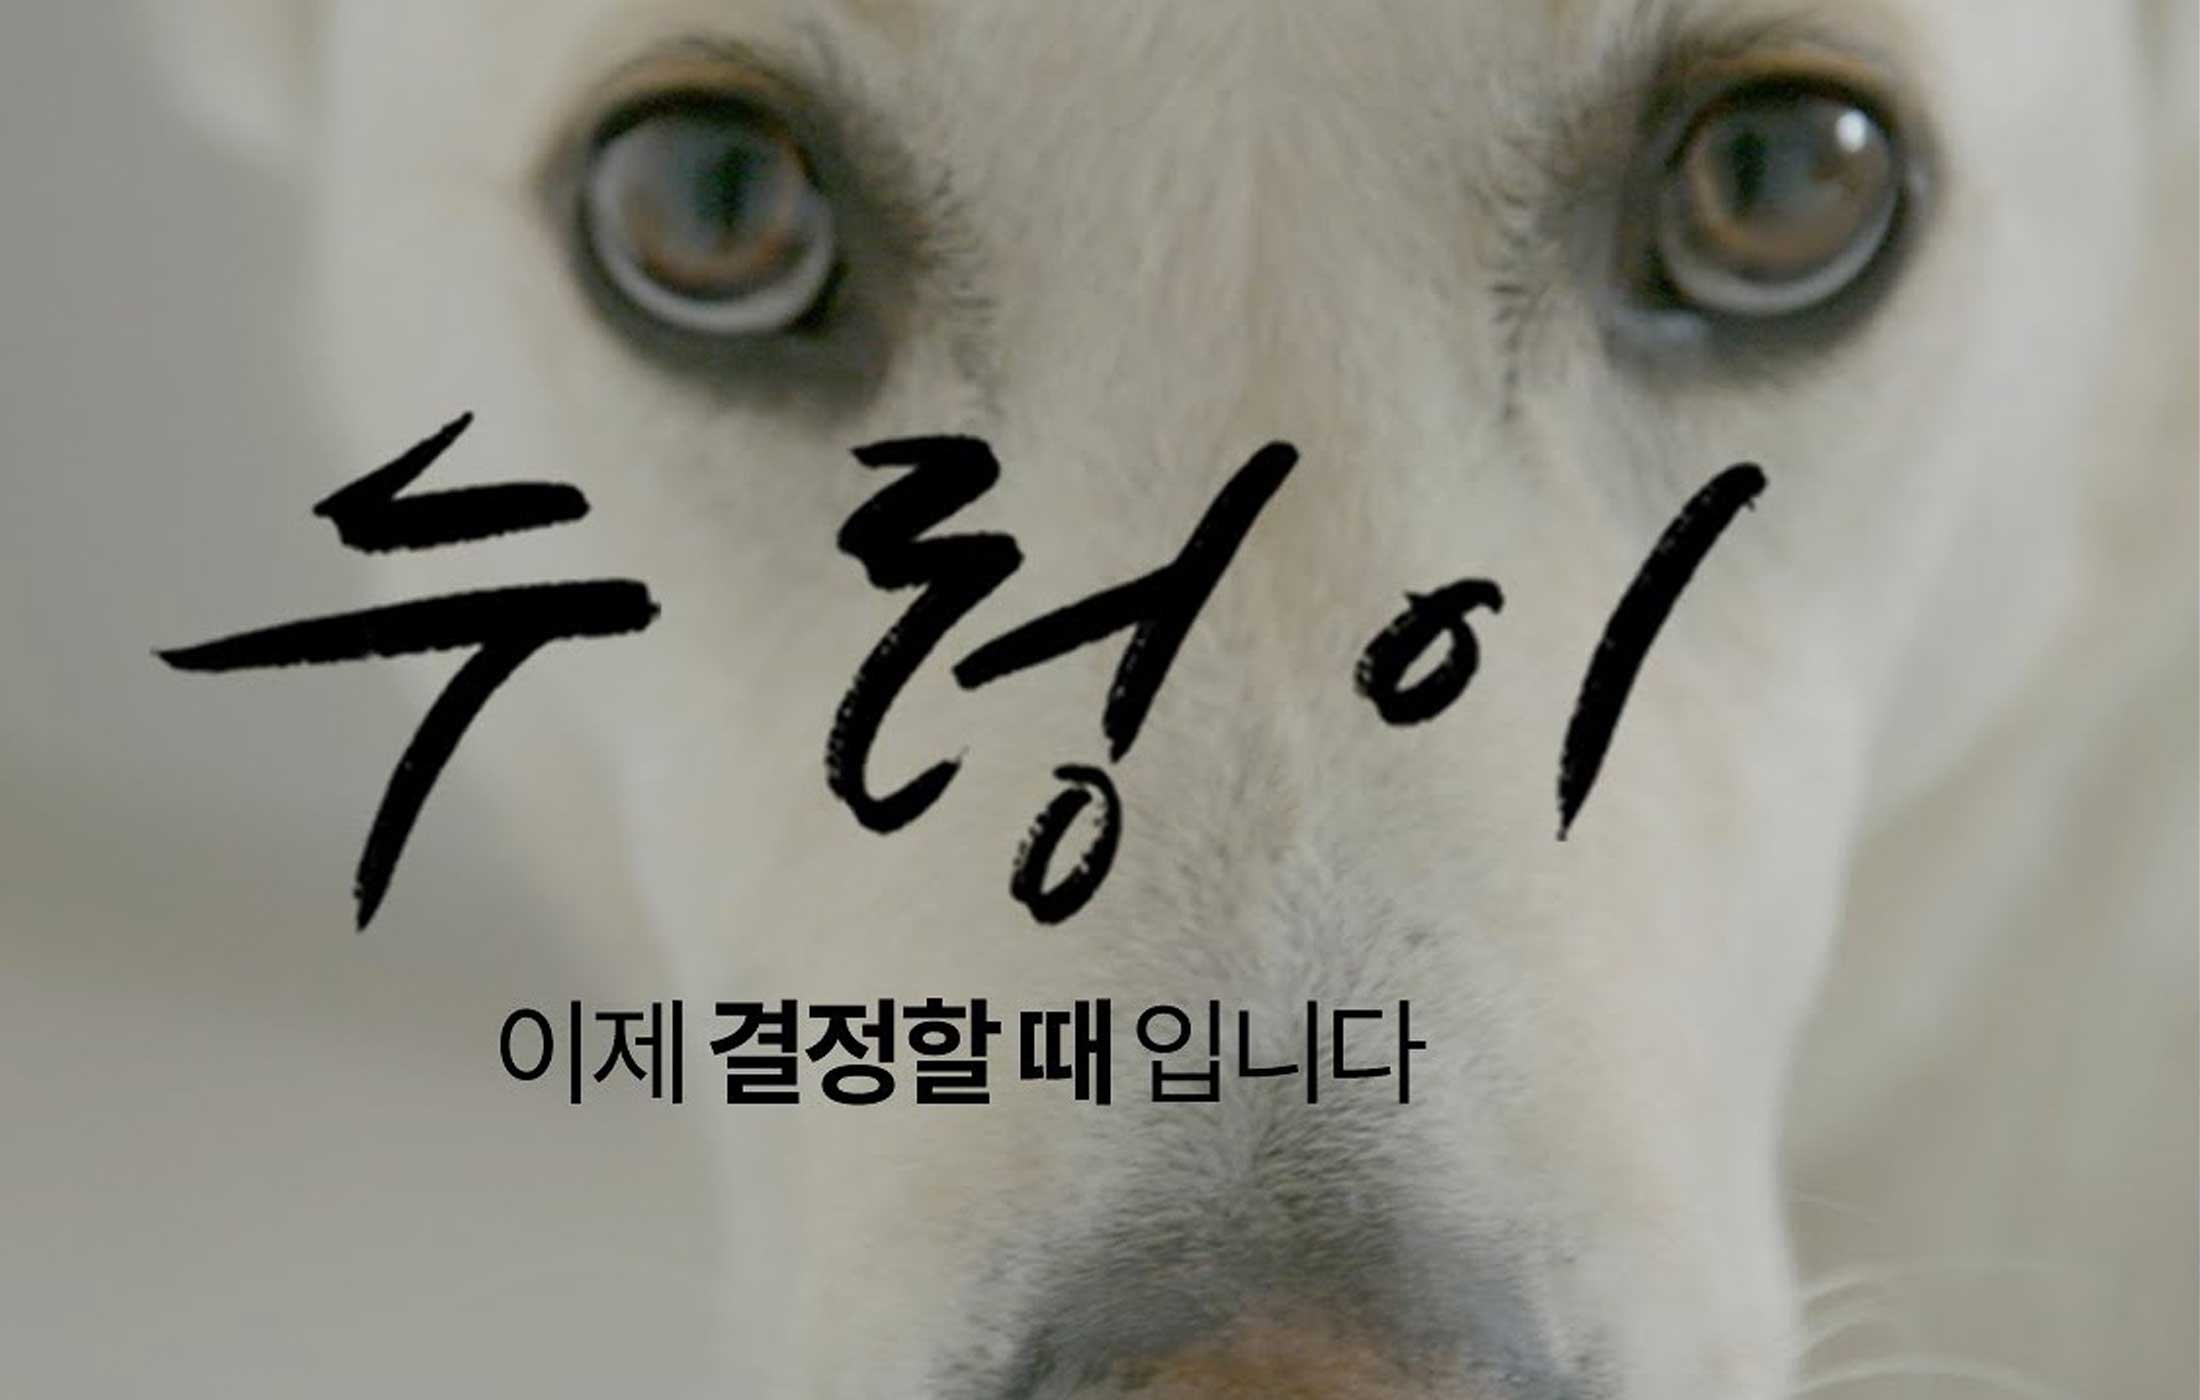 Nureongi Dokumentation Movie Dog Meat Trade Hundefleischhandel Korea World of Strays